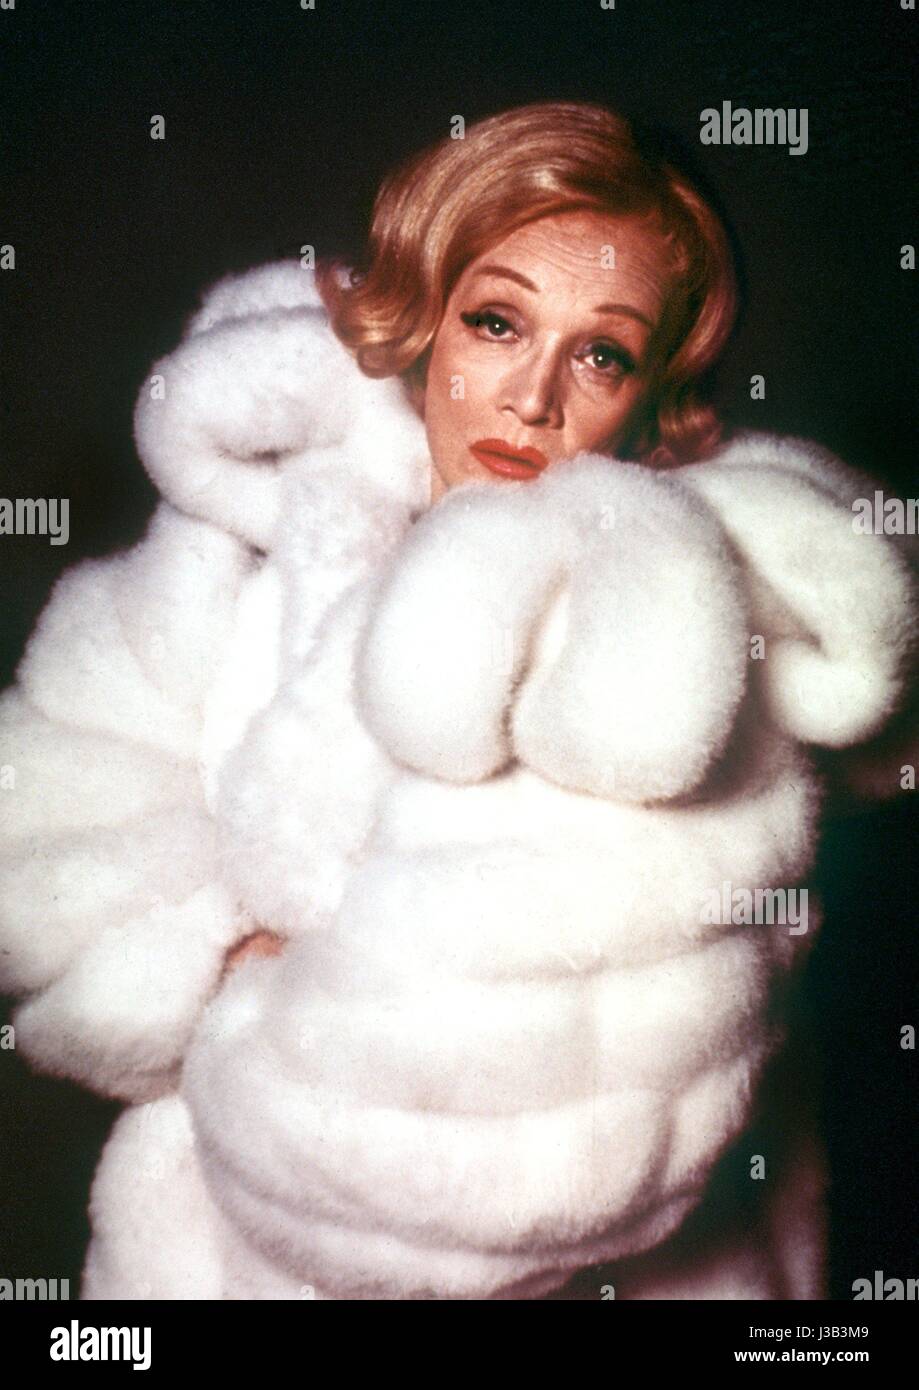 ARCHIVE - L'actrice Marlene Dietrich, photograpged en l'an 197. Le film star Marlene Dietrich est mort il y a 25 ans. Elle était censé être un perfectionniste avid et gravement lonesome. Photo : -/dpa Banque D'Images